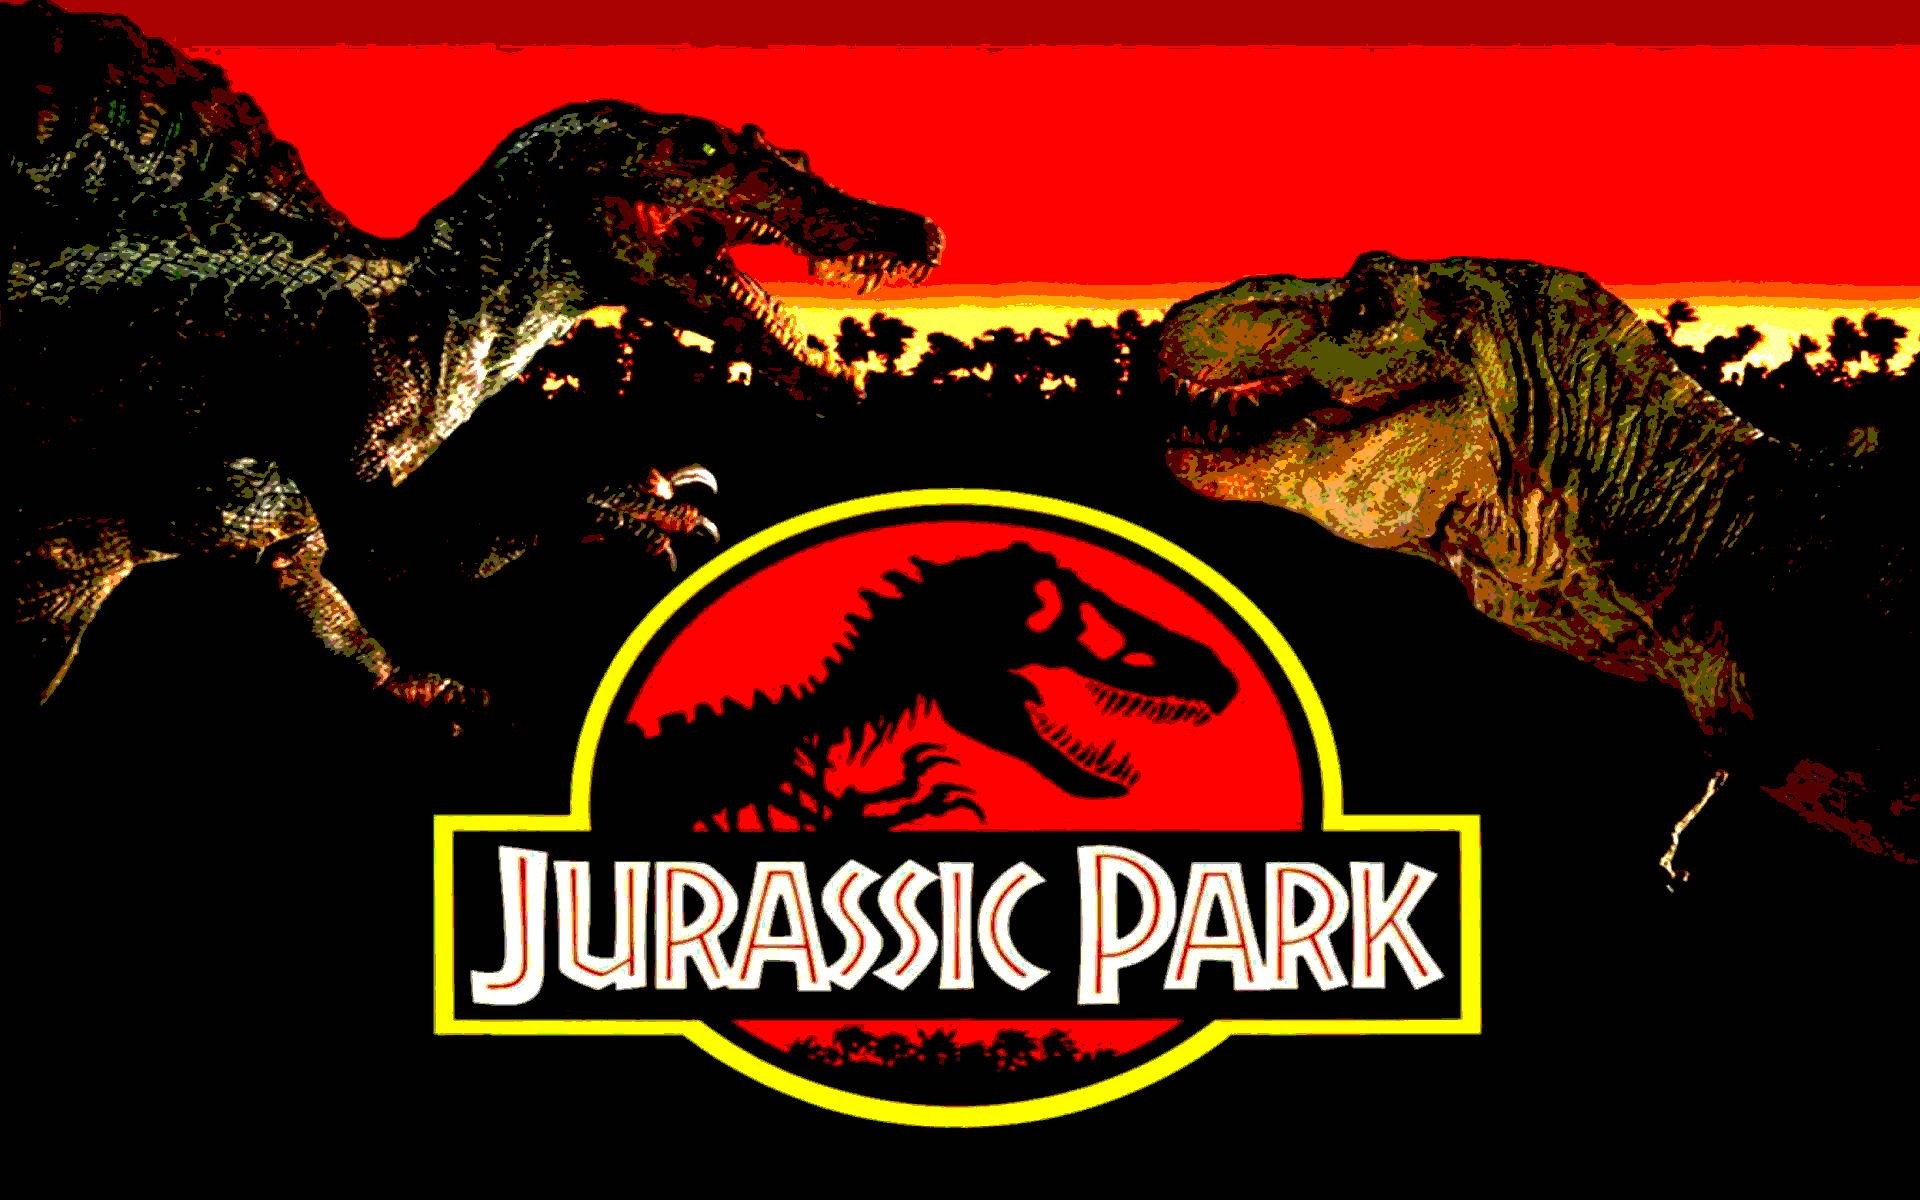 1920x1200 JURASSIC PARK adventure sci-fi fantasy dinosaur movie film poster wallpaper  |  | 289329 | WallpaperUP